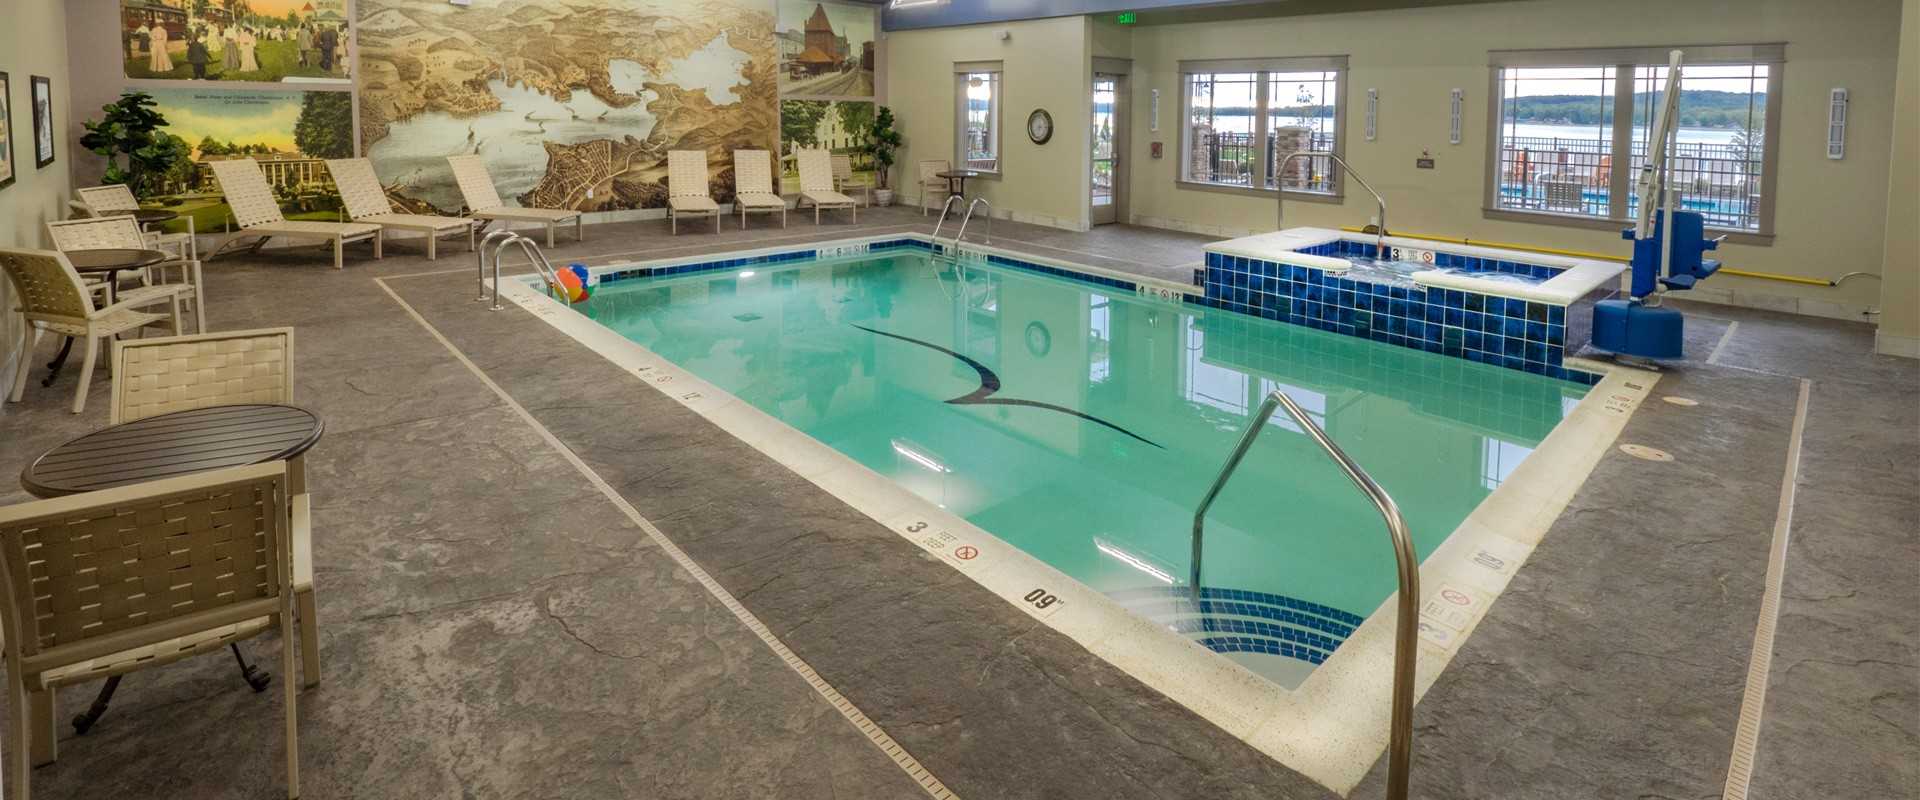 Chautauqua Harbor Hotel indoor pool